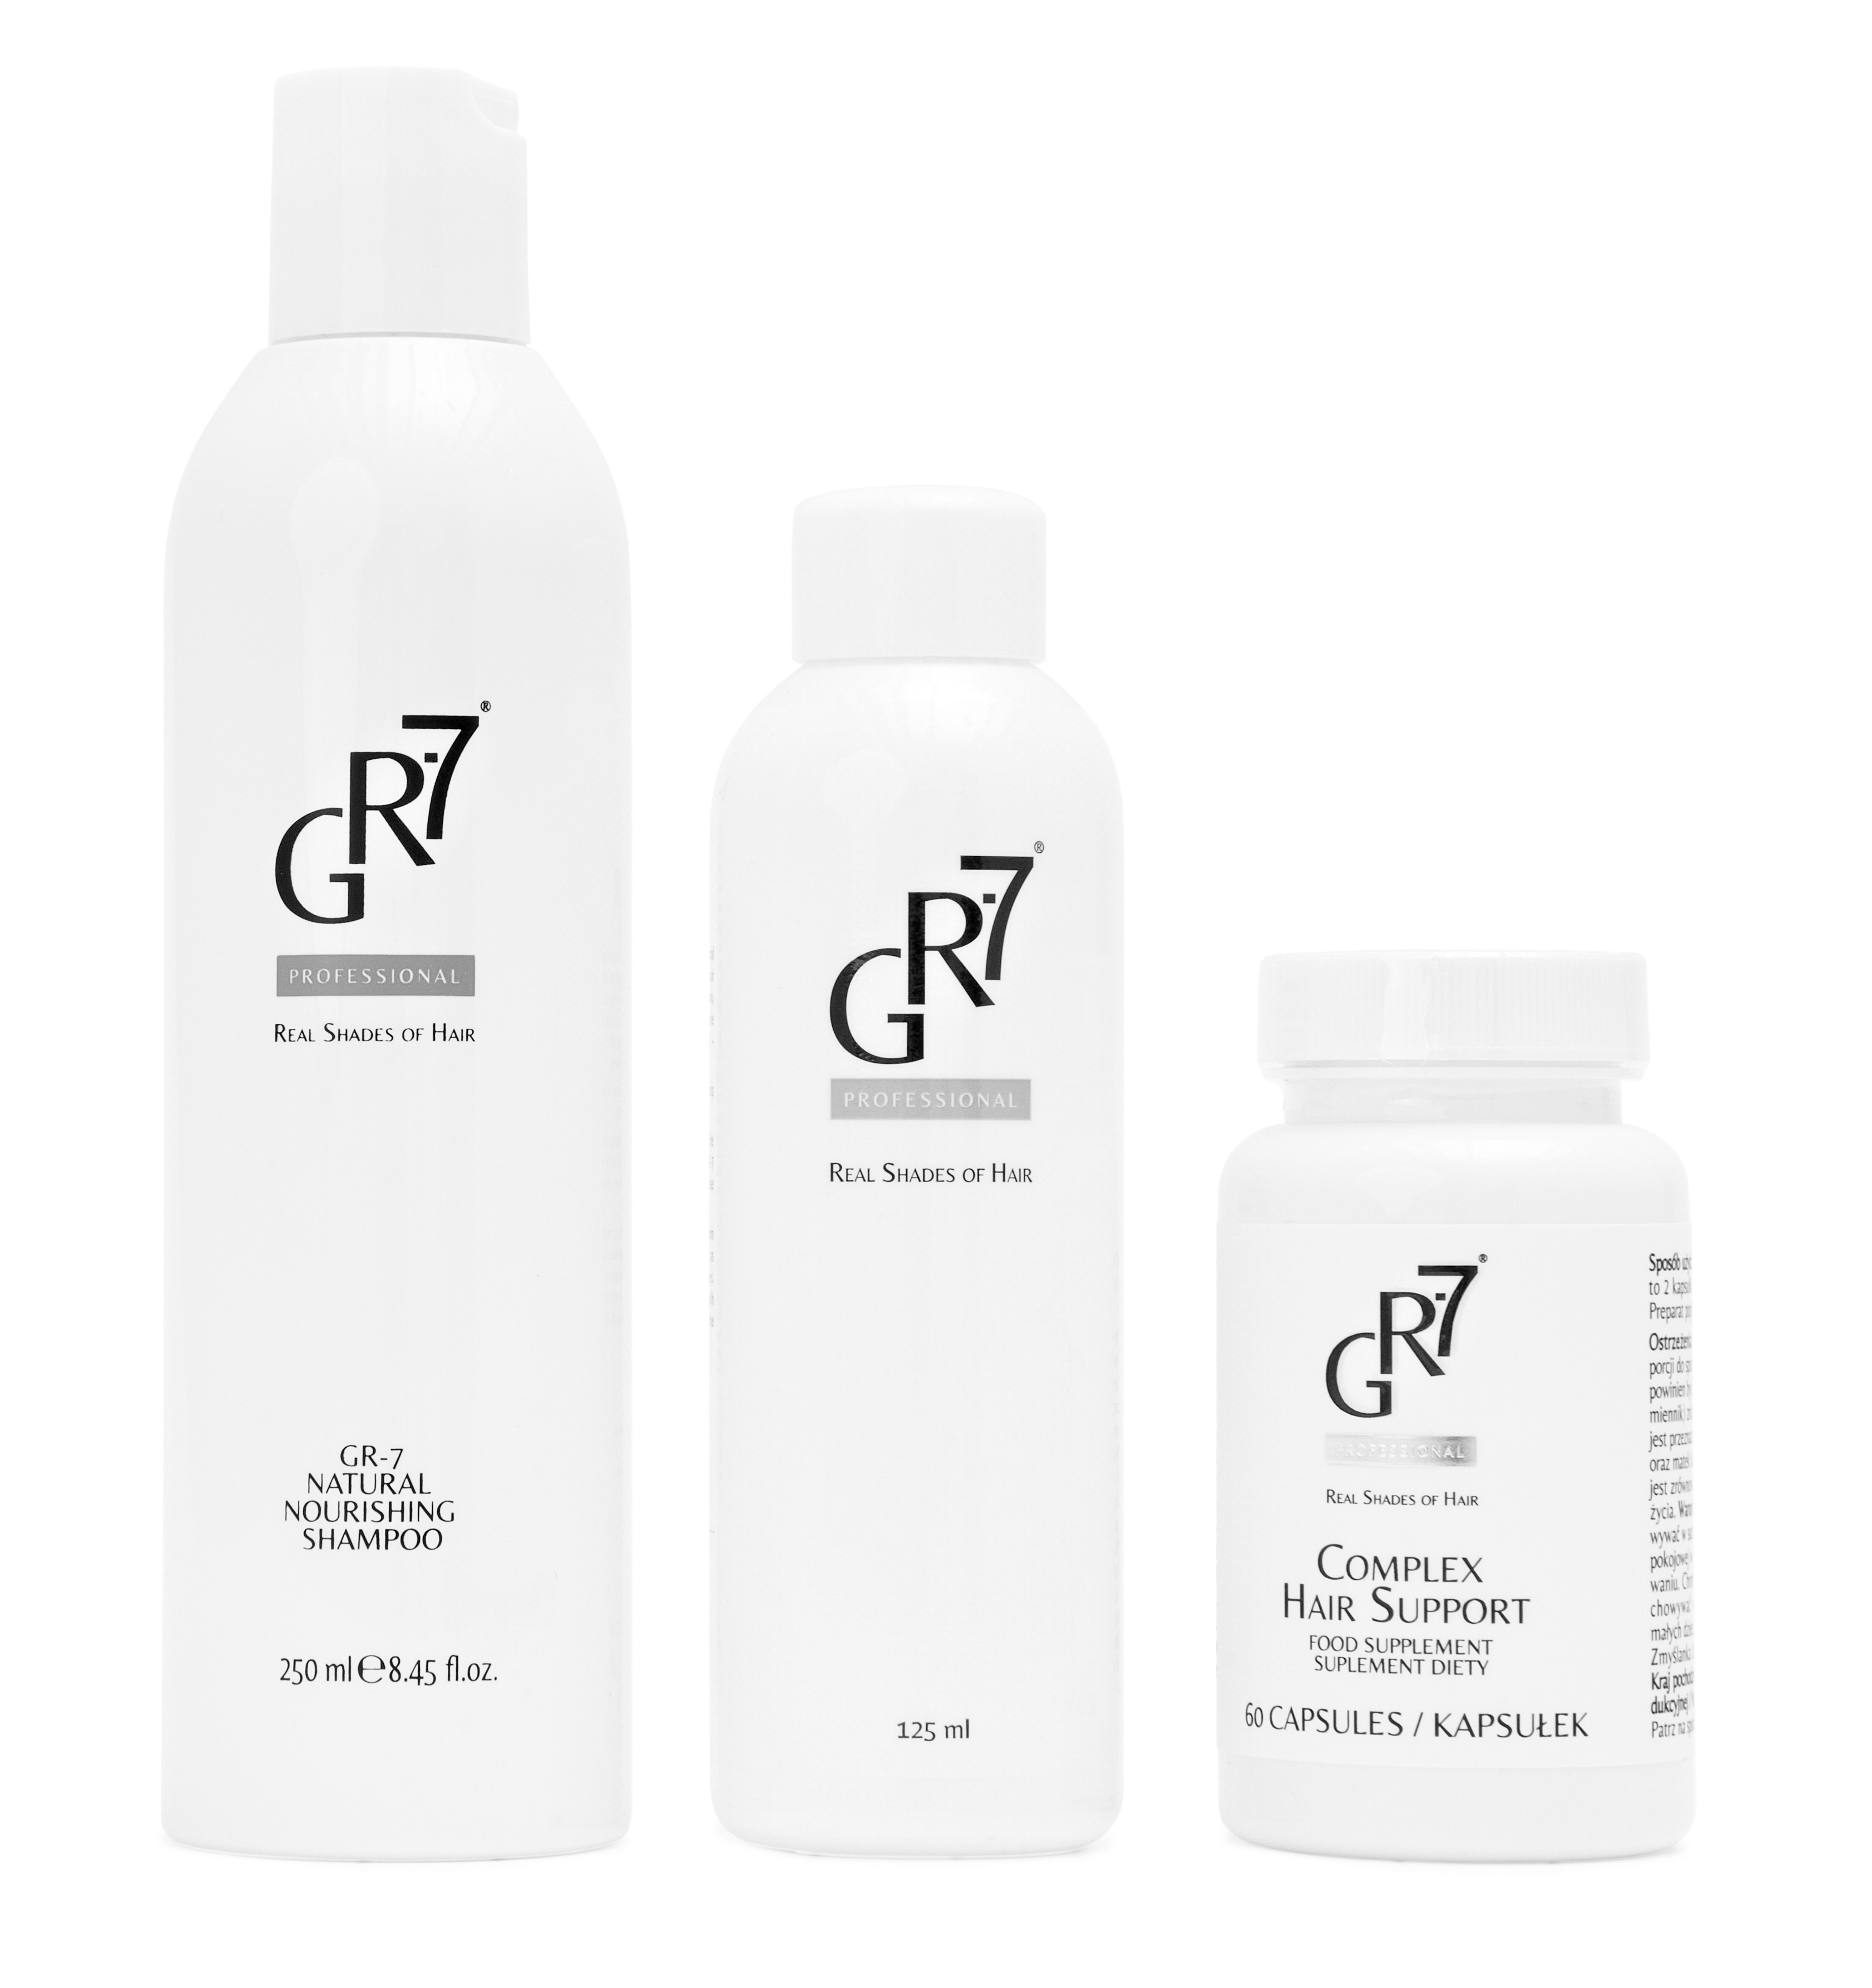 gliss kur bio tech-restore szampon do włosów 400 ml